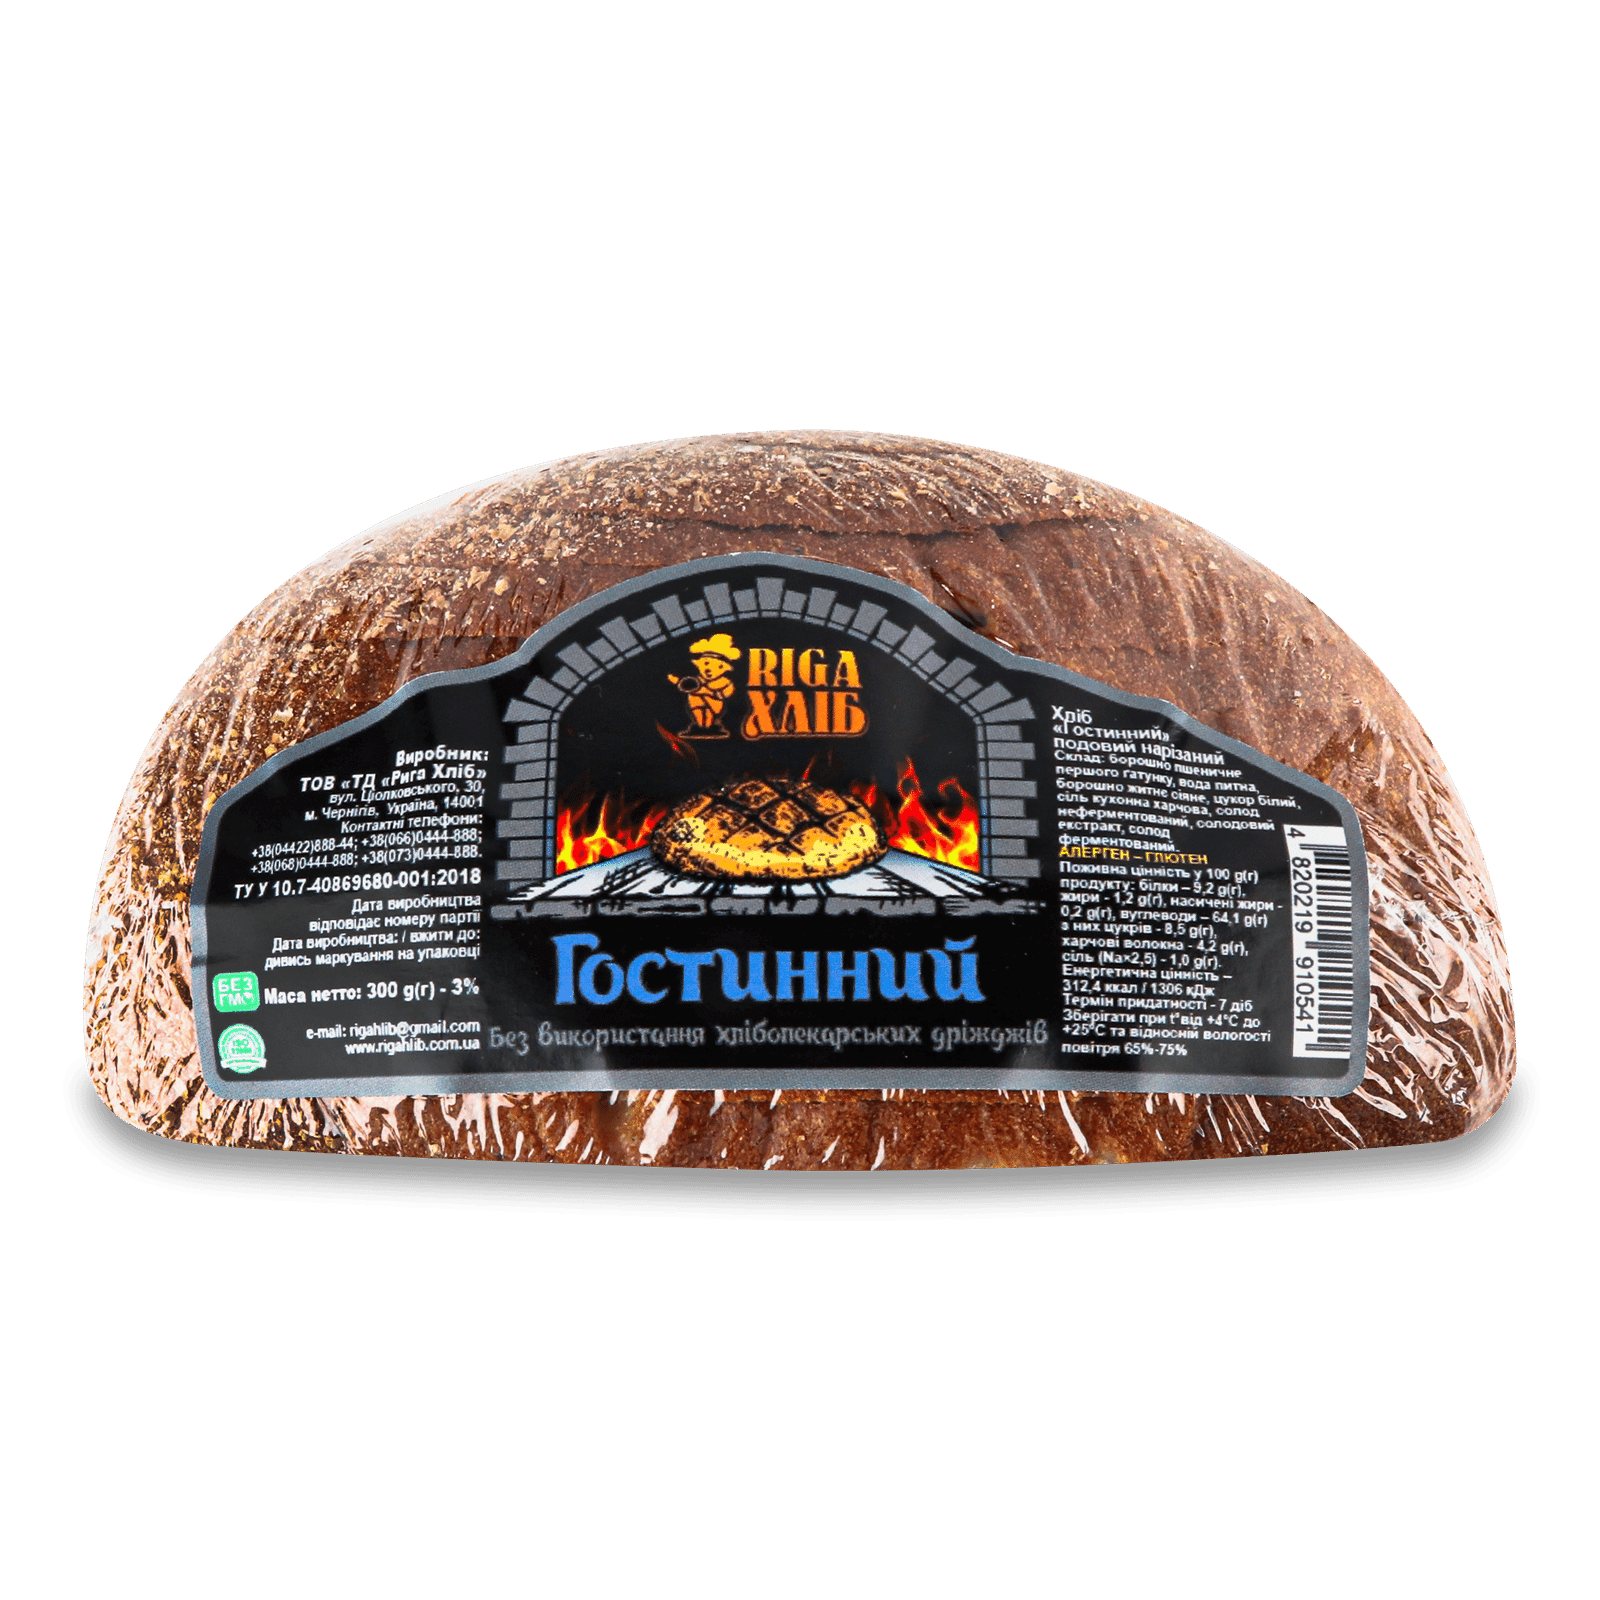 Хліб Riga хліб Гостинний подовий нарізний - 1